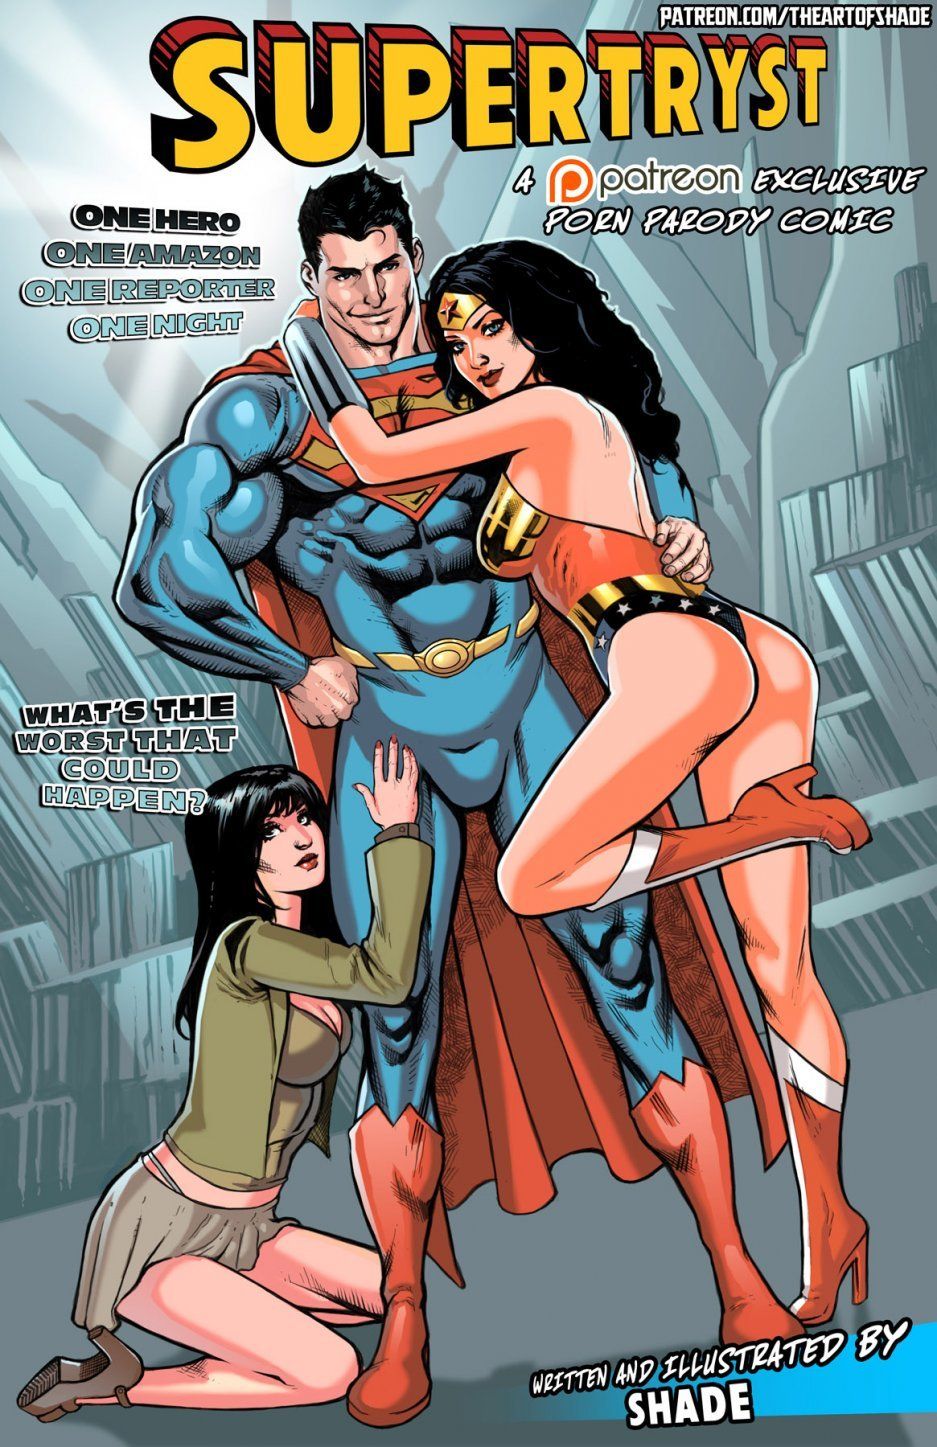 Wonder Woman Porn Comics Tumblr - Male wonder woman porn - Porn pic.